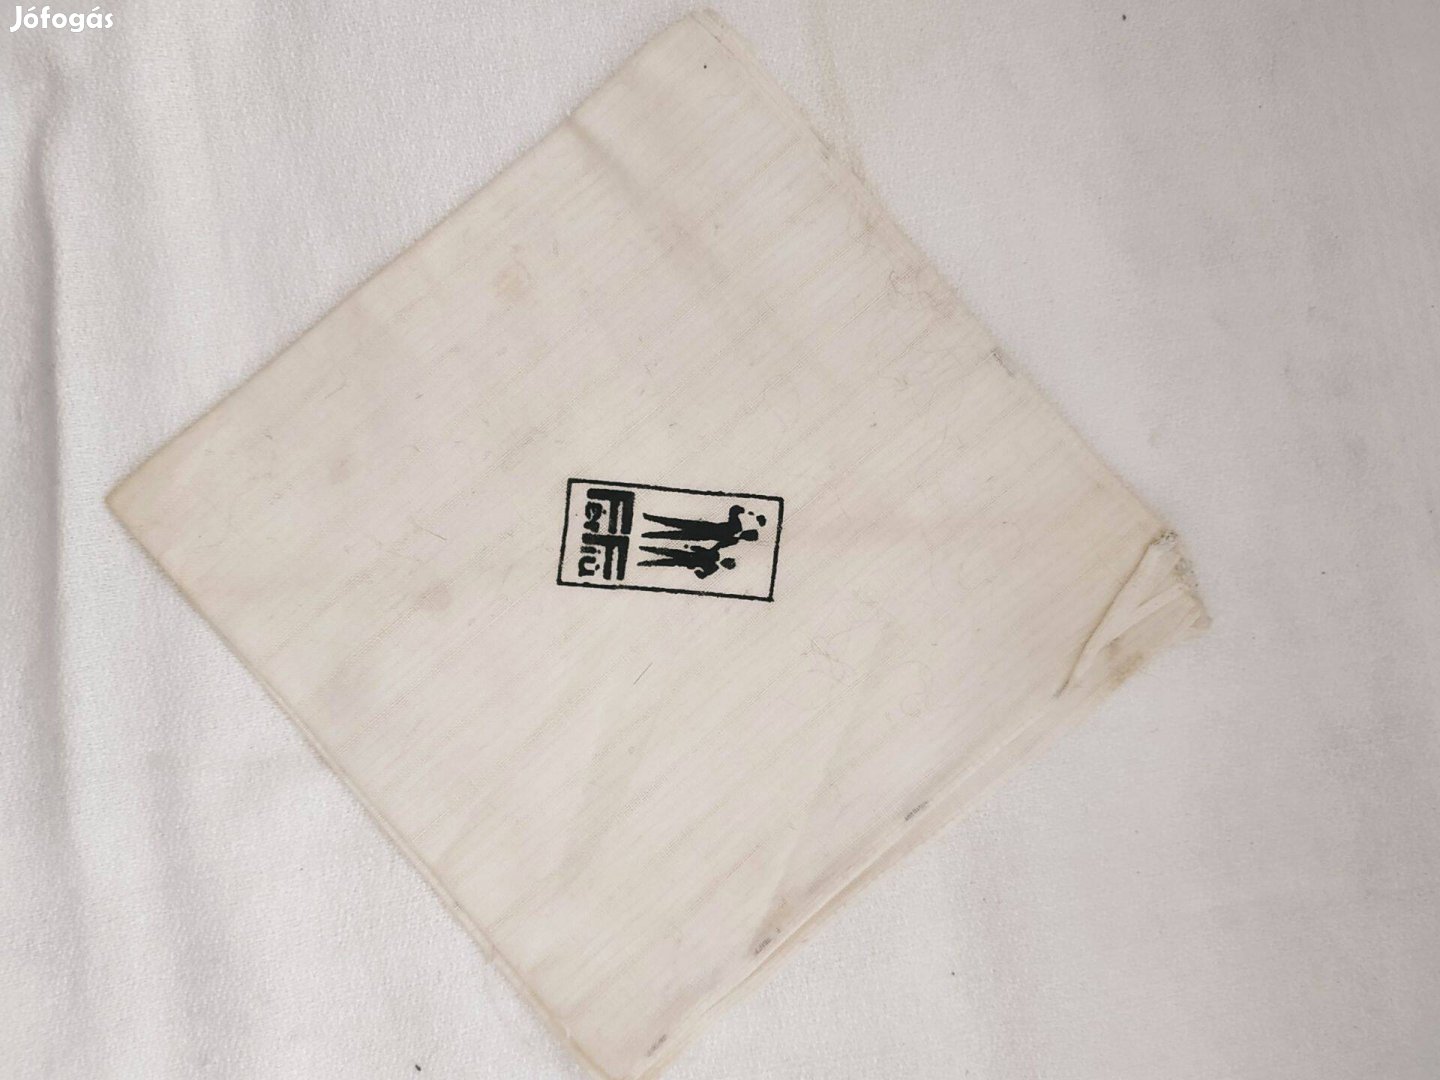 Retro "Férfiú" feliratú, fehér színű textil zsebkendő